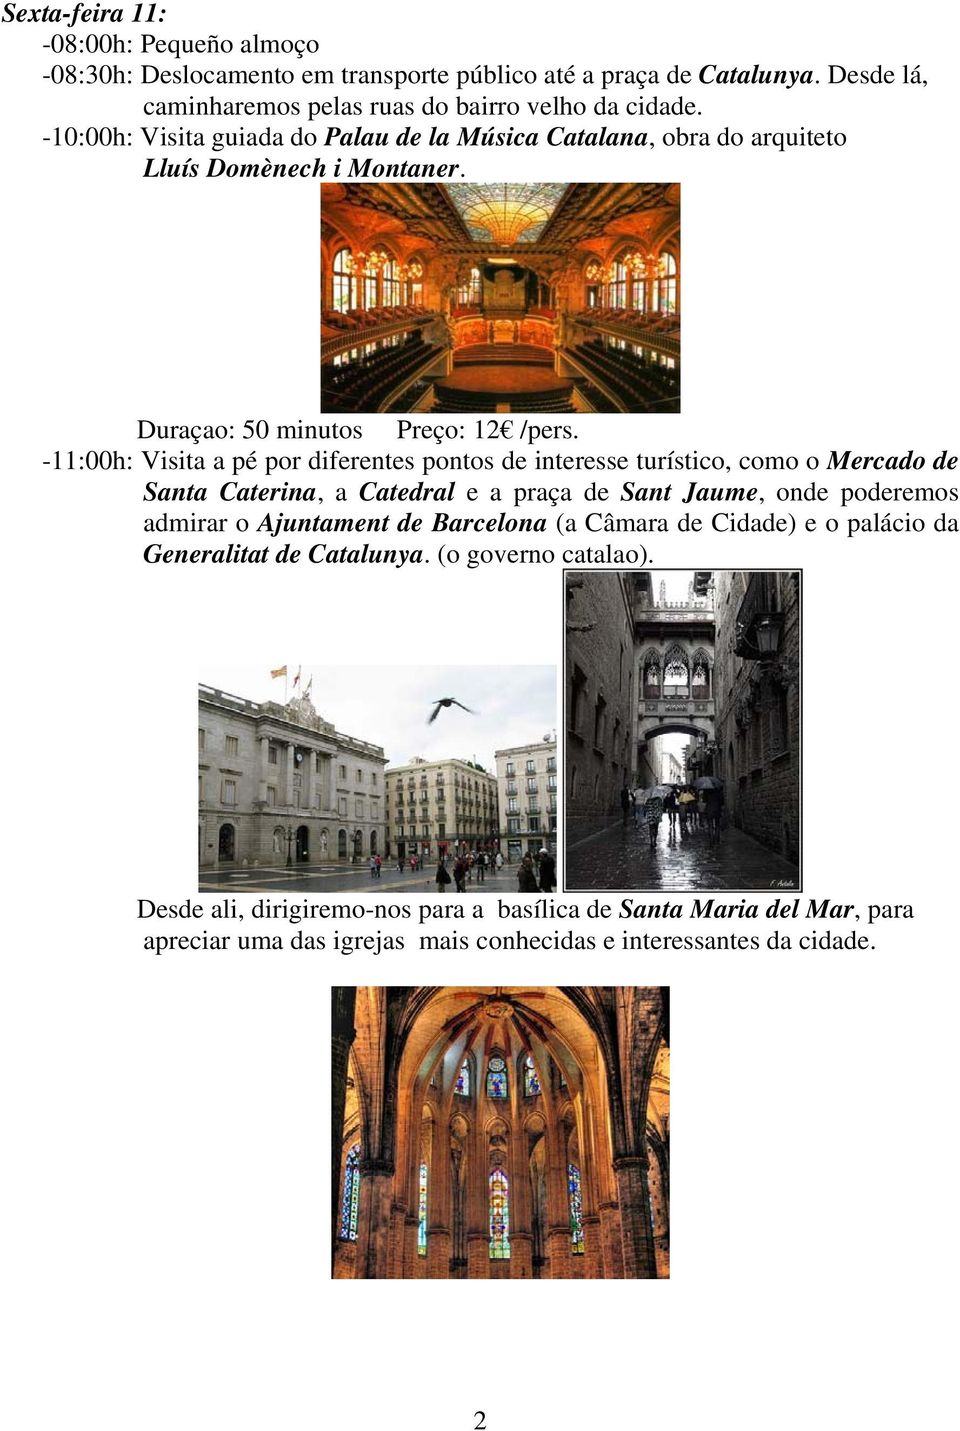 -11:00h: Visita a pé por diferentes pontos de interesse turístico, como o Mercado de Santa Caterina, a Catedral e a praça de Sant Jaume, onde poderemos admirar o Ajuntament de